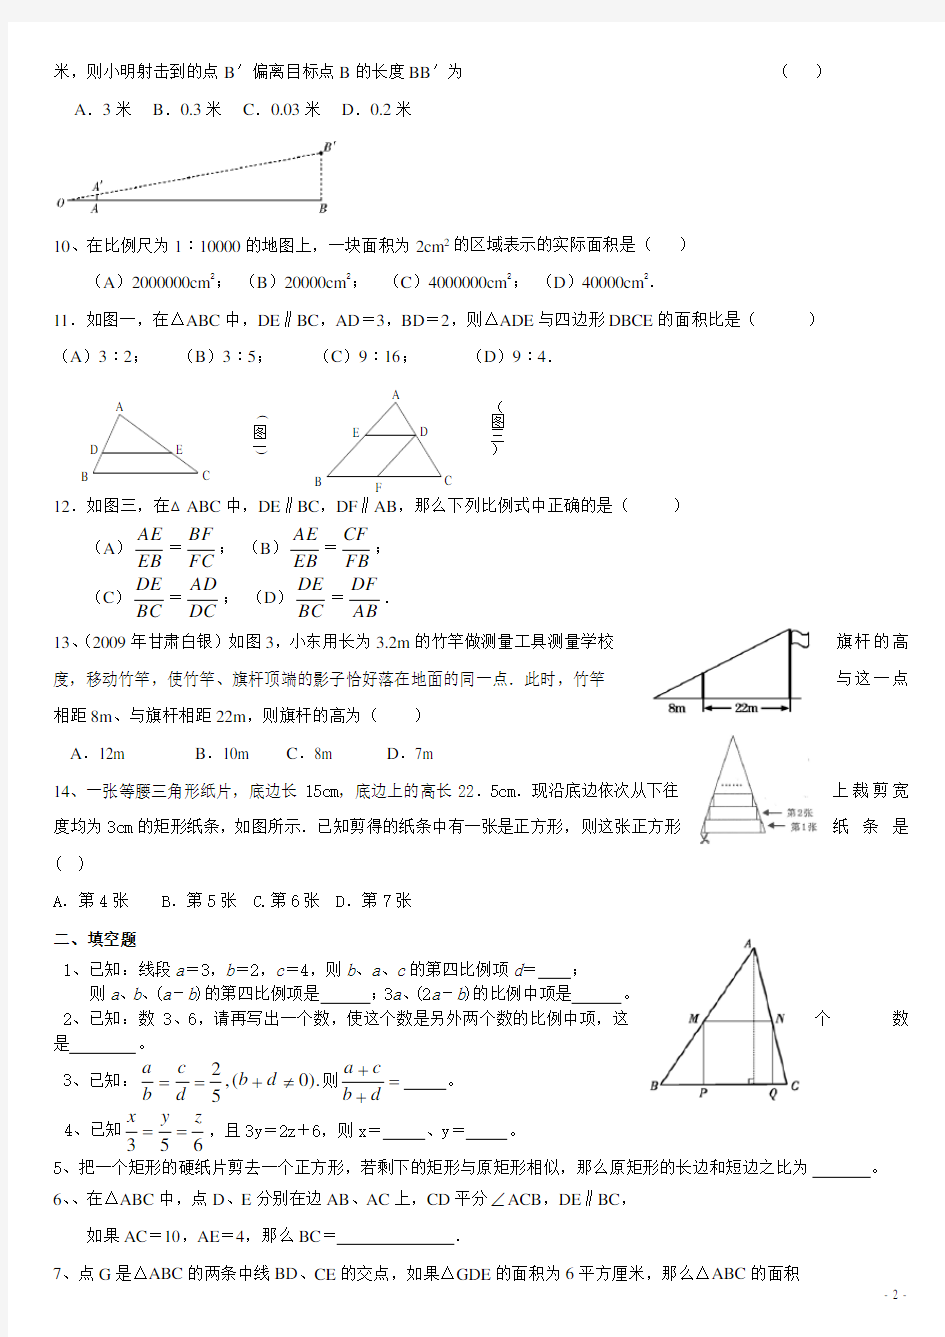 初三数学_相似三角形练习题